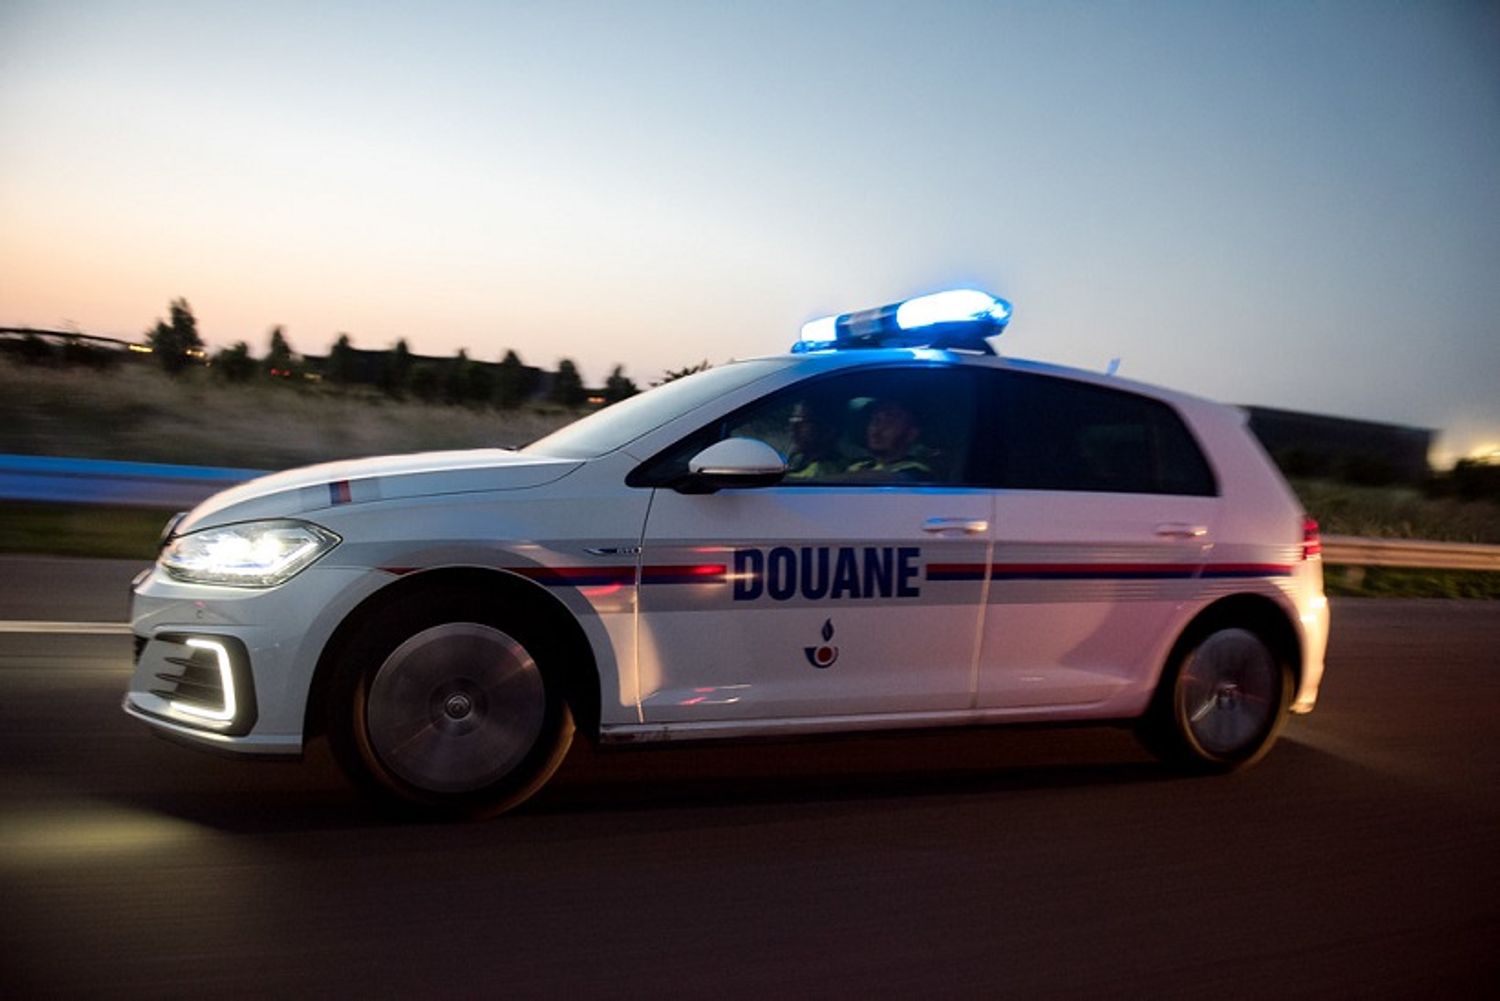 Les douanes de Dijon ont saisi 86 930 euros dans une voiture le week-end dernier sur l’A31